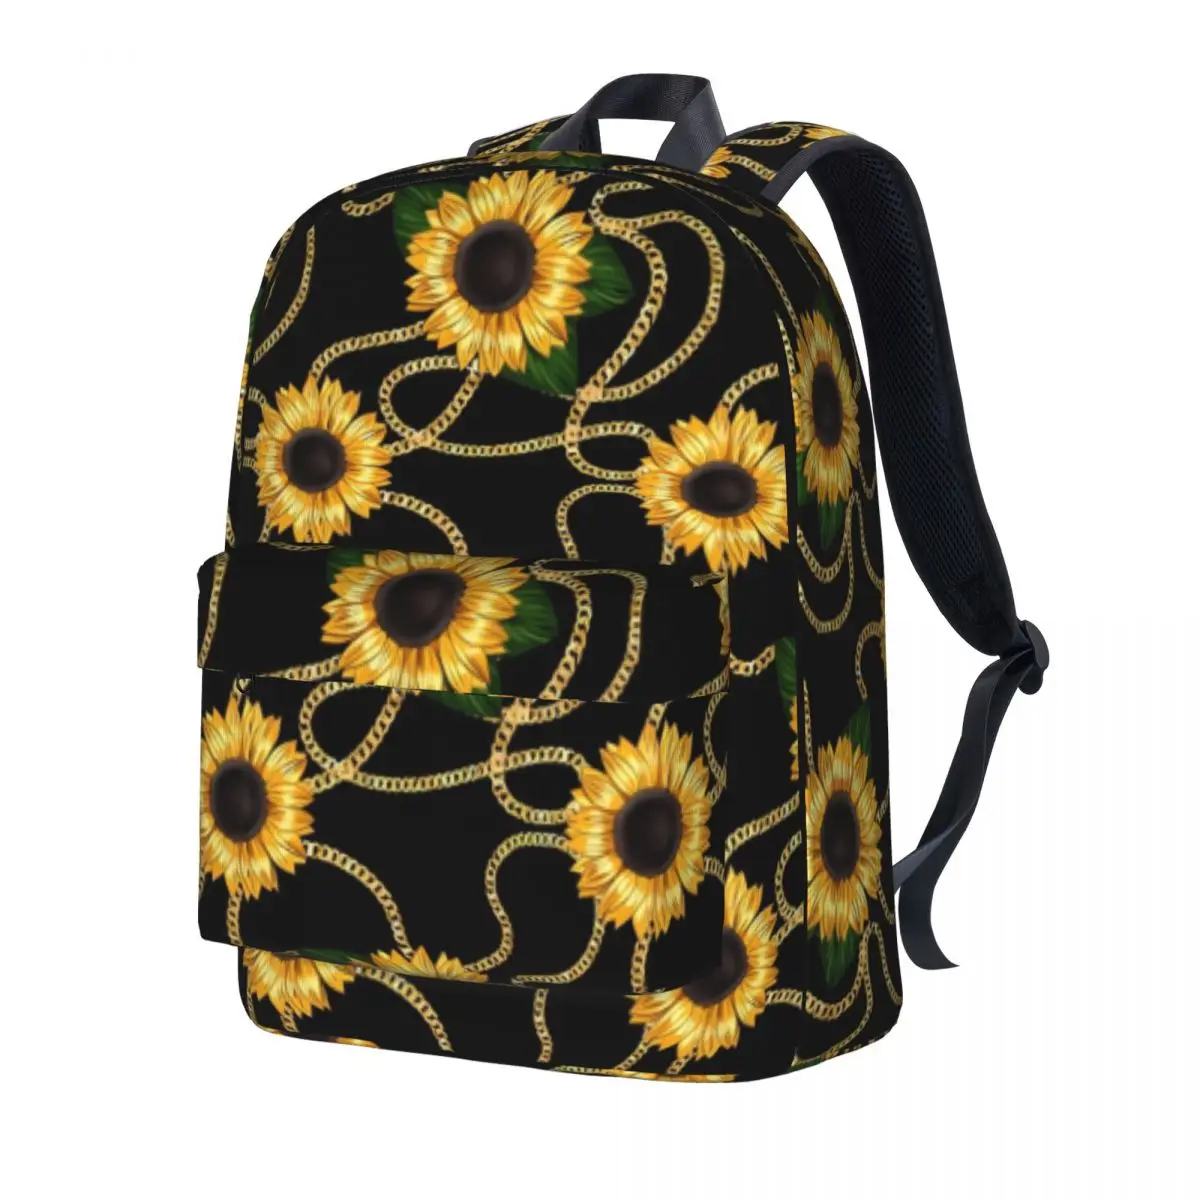 

Рюкзак с принтом золотых цепочек, Подсолнухи, стильные рюкзаки для университета, высококачественные большие школьные ранцы для подростков, повседневный рюкзак